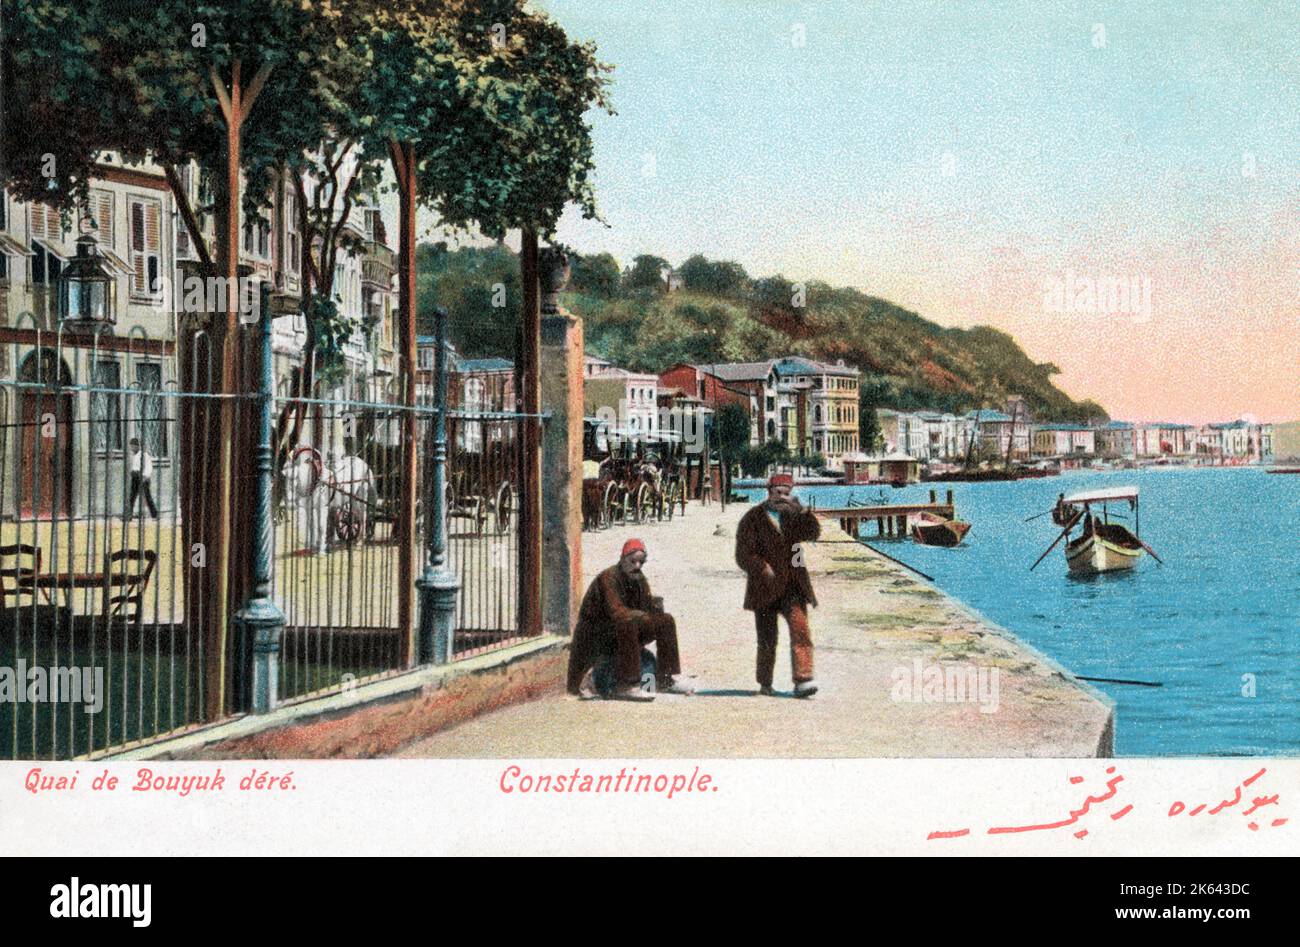 Der Bosporus, Istanbul, Türkei - Buyukdere - ehemals griechisch-byzantinischer Bezirk Vathys Kolpos Stockfoto